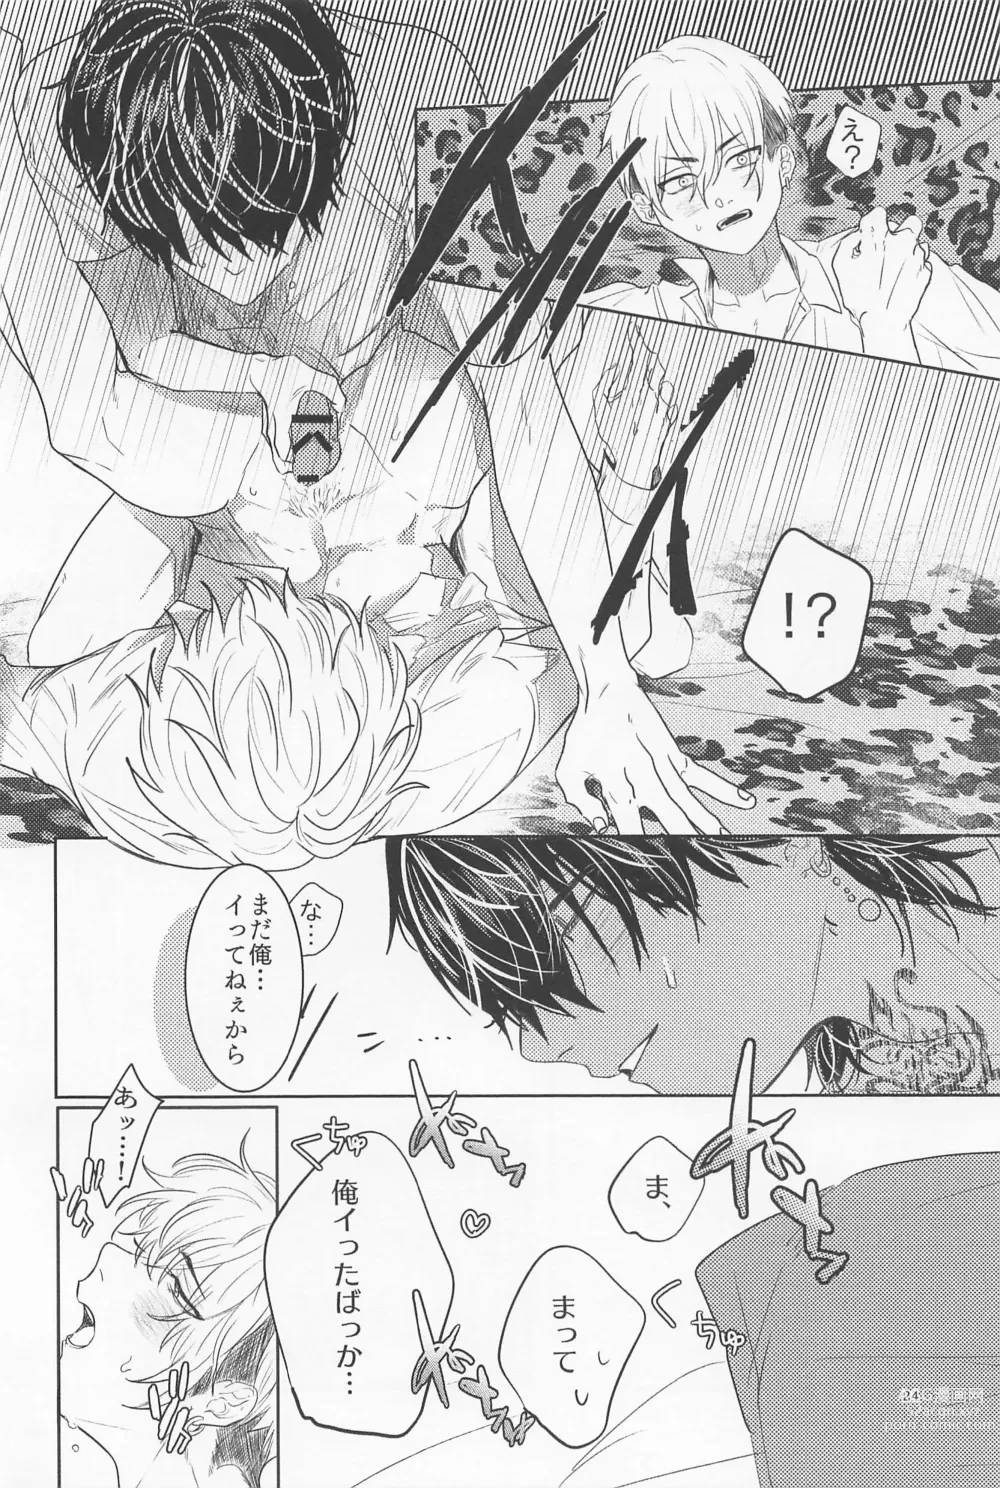 Page 23 of doujinshi Ao to Haru